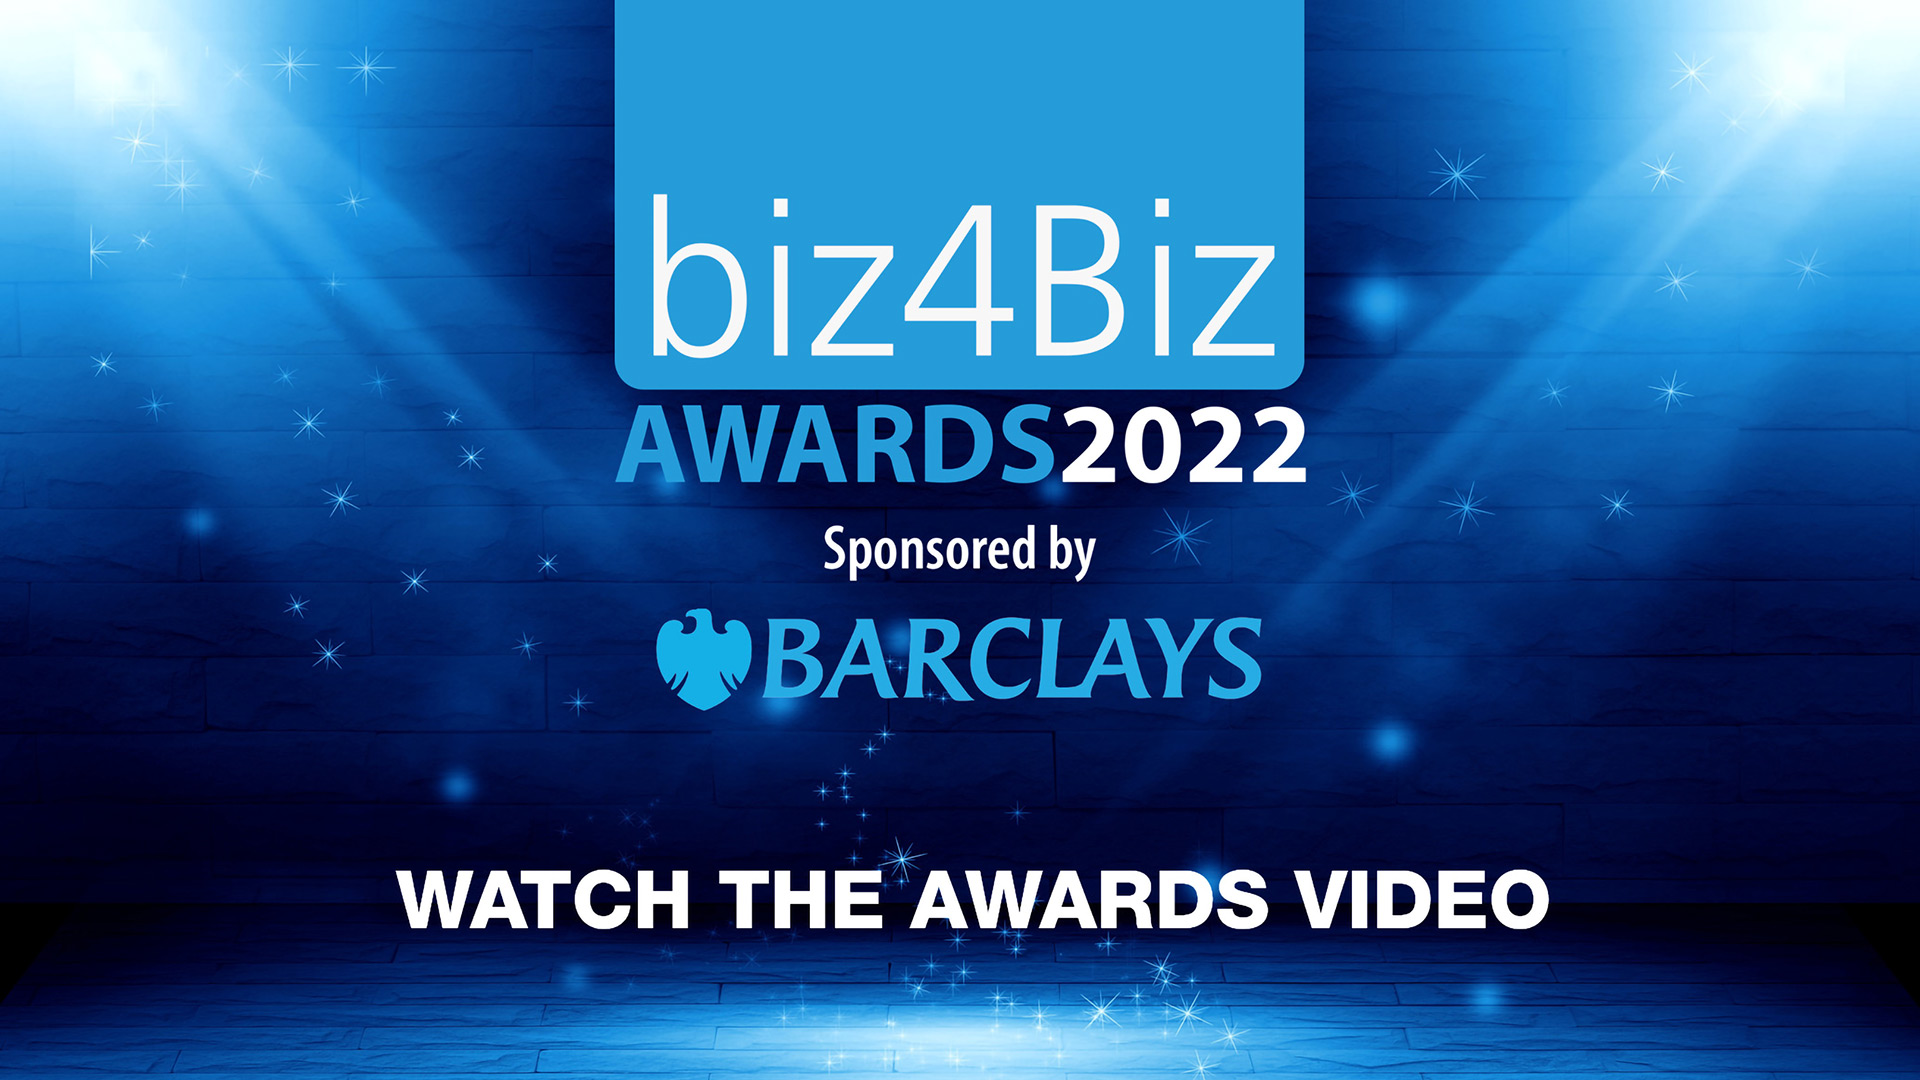 biz4Biz Awards 2022 video